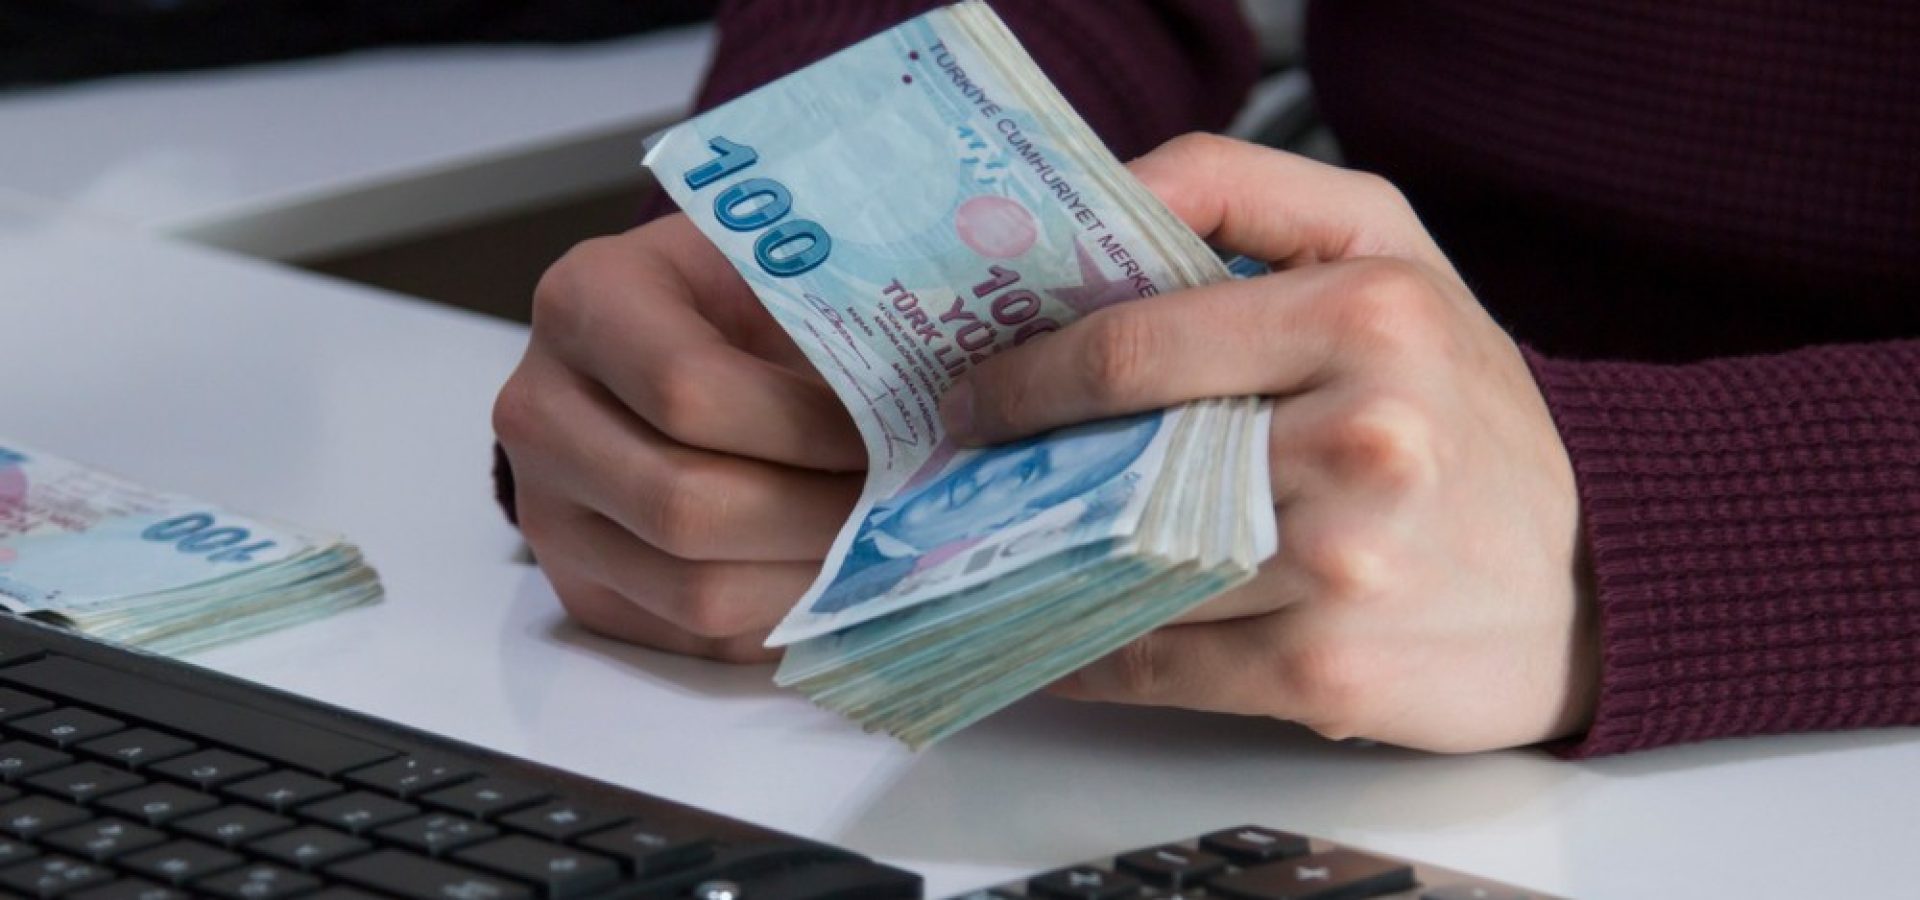 Wibest – Turkish: Hands holding Turkish lira bills in front of a keyboard.